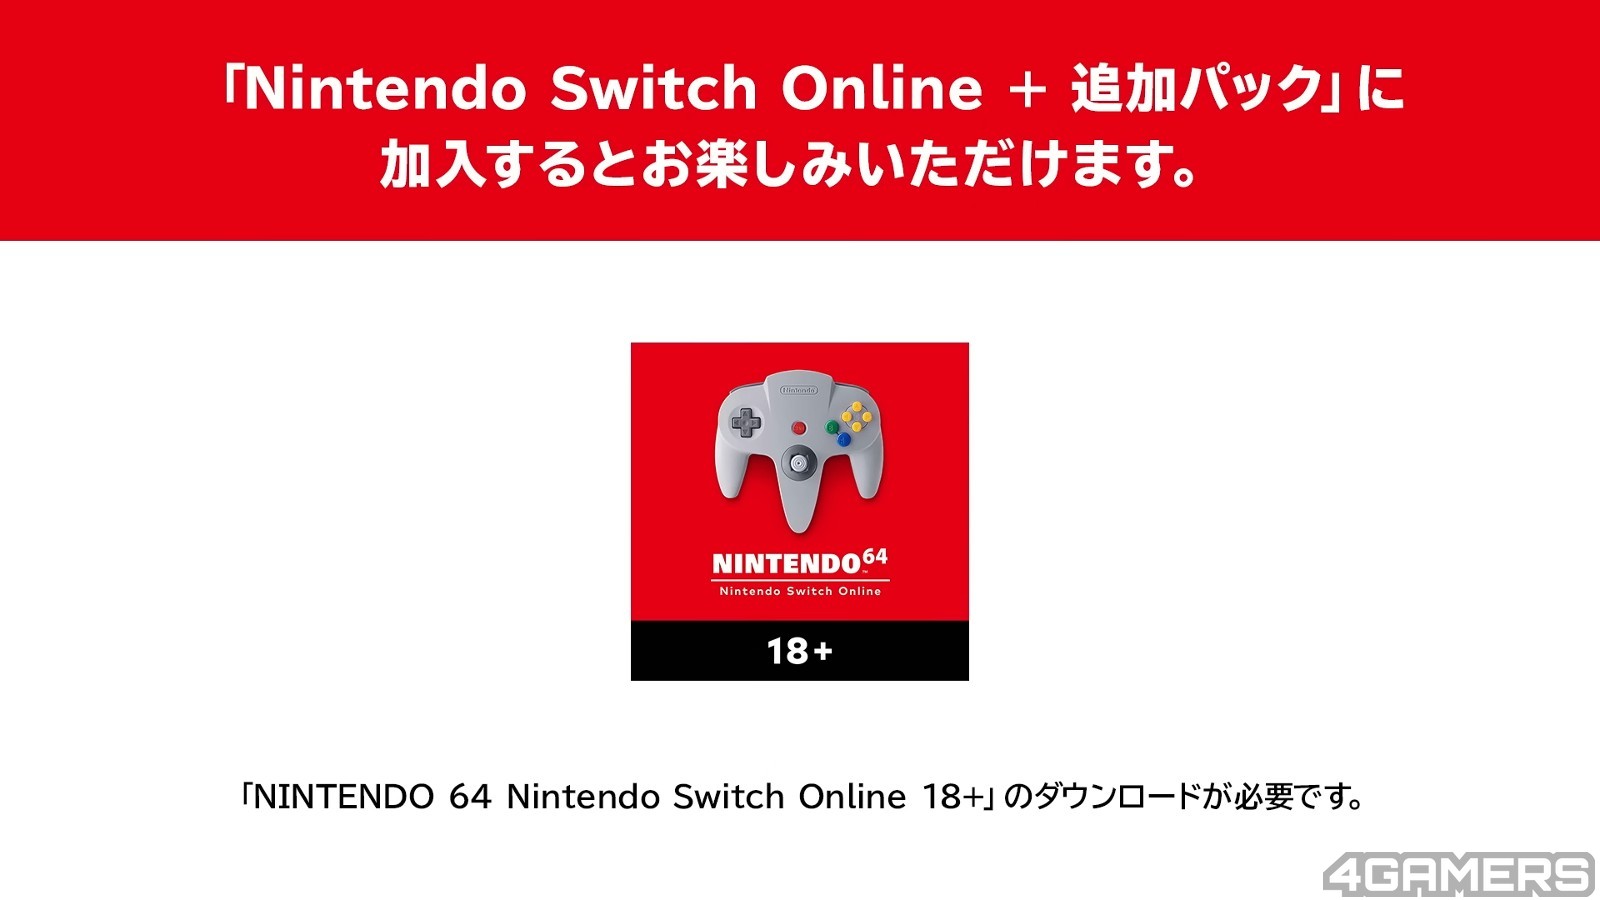 Pac-Man 99 foi encerrado e removido do Nintendo Switch Online